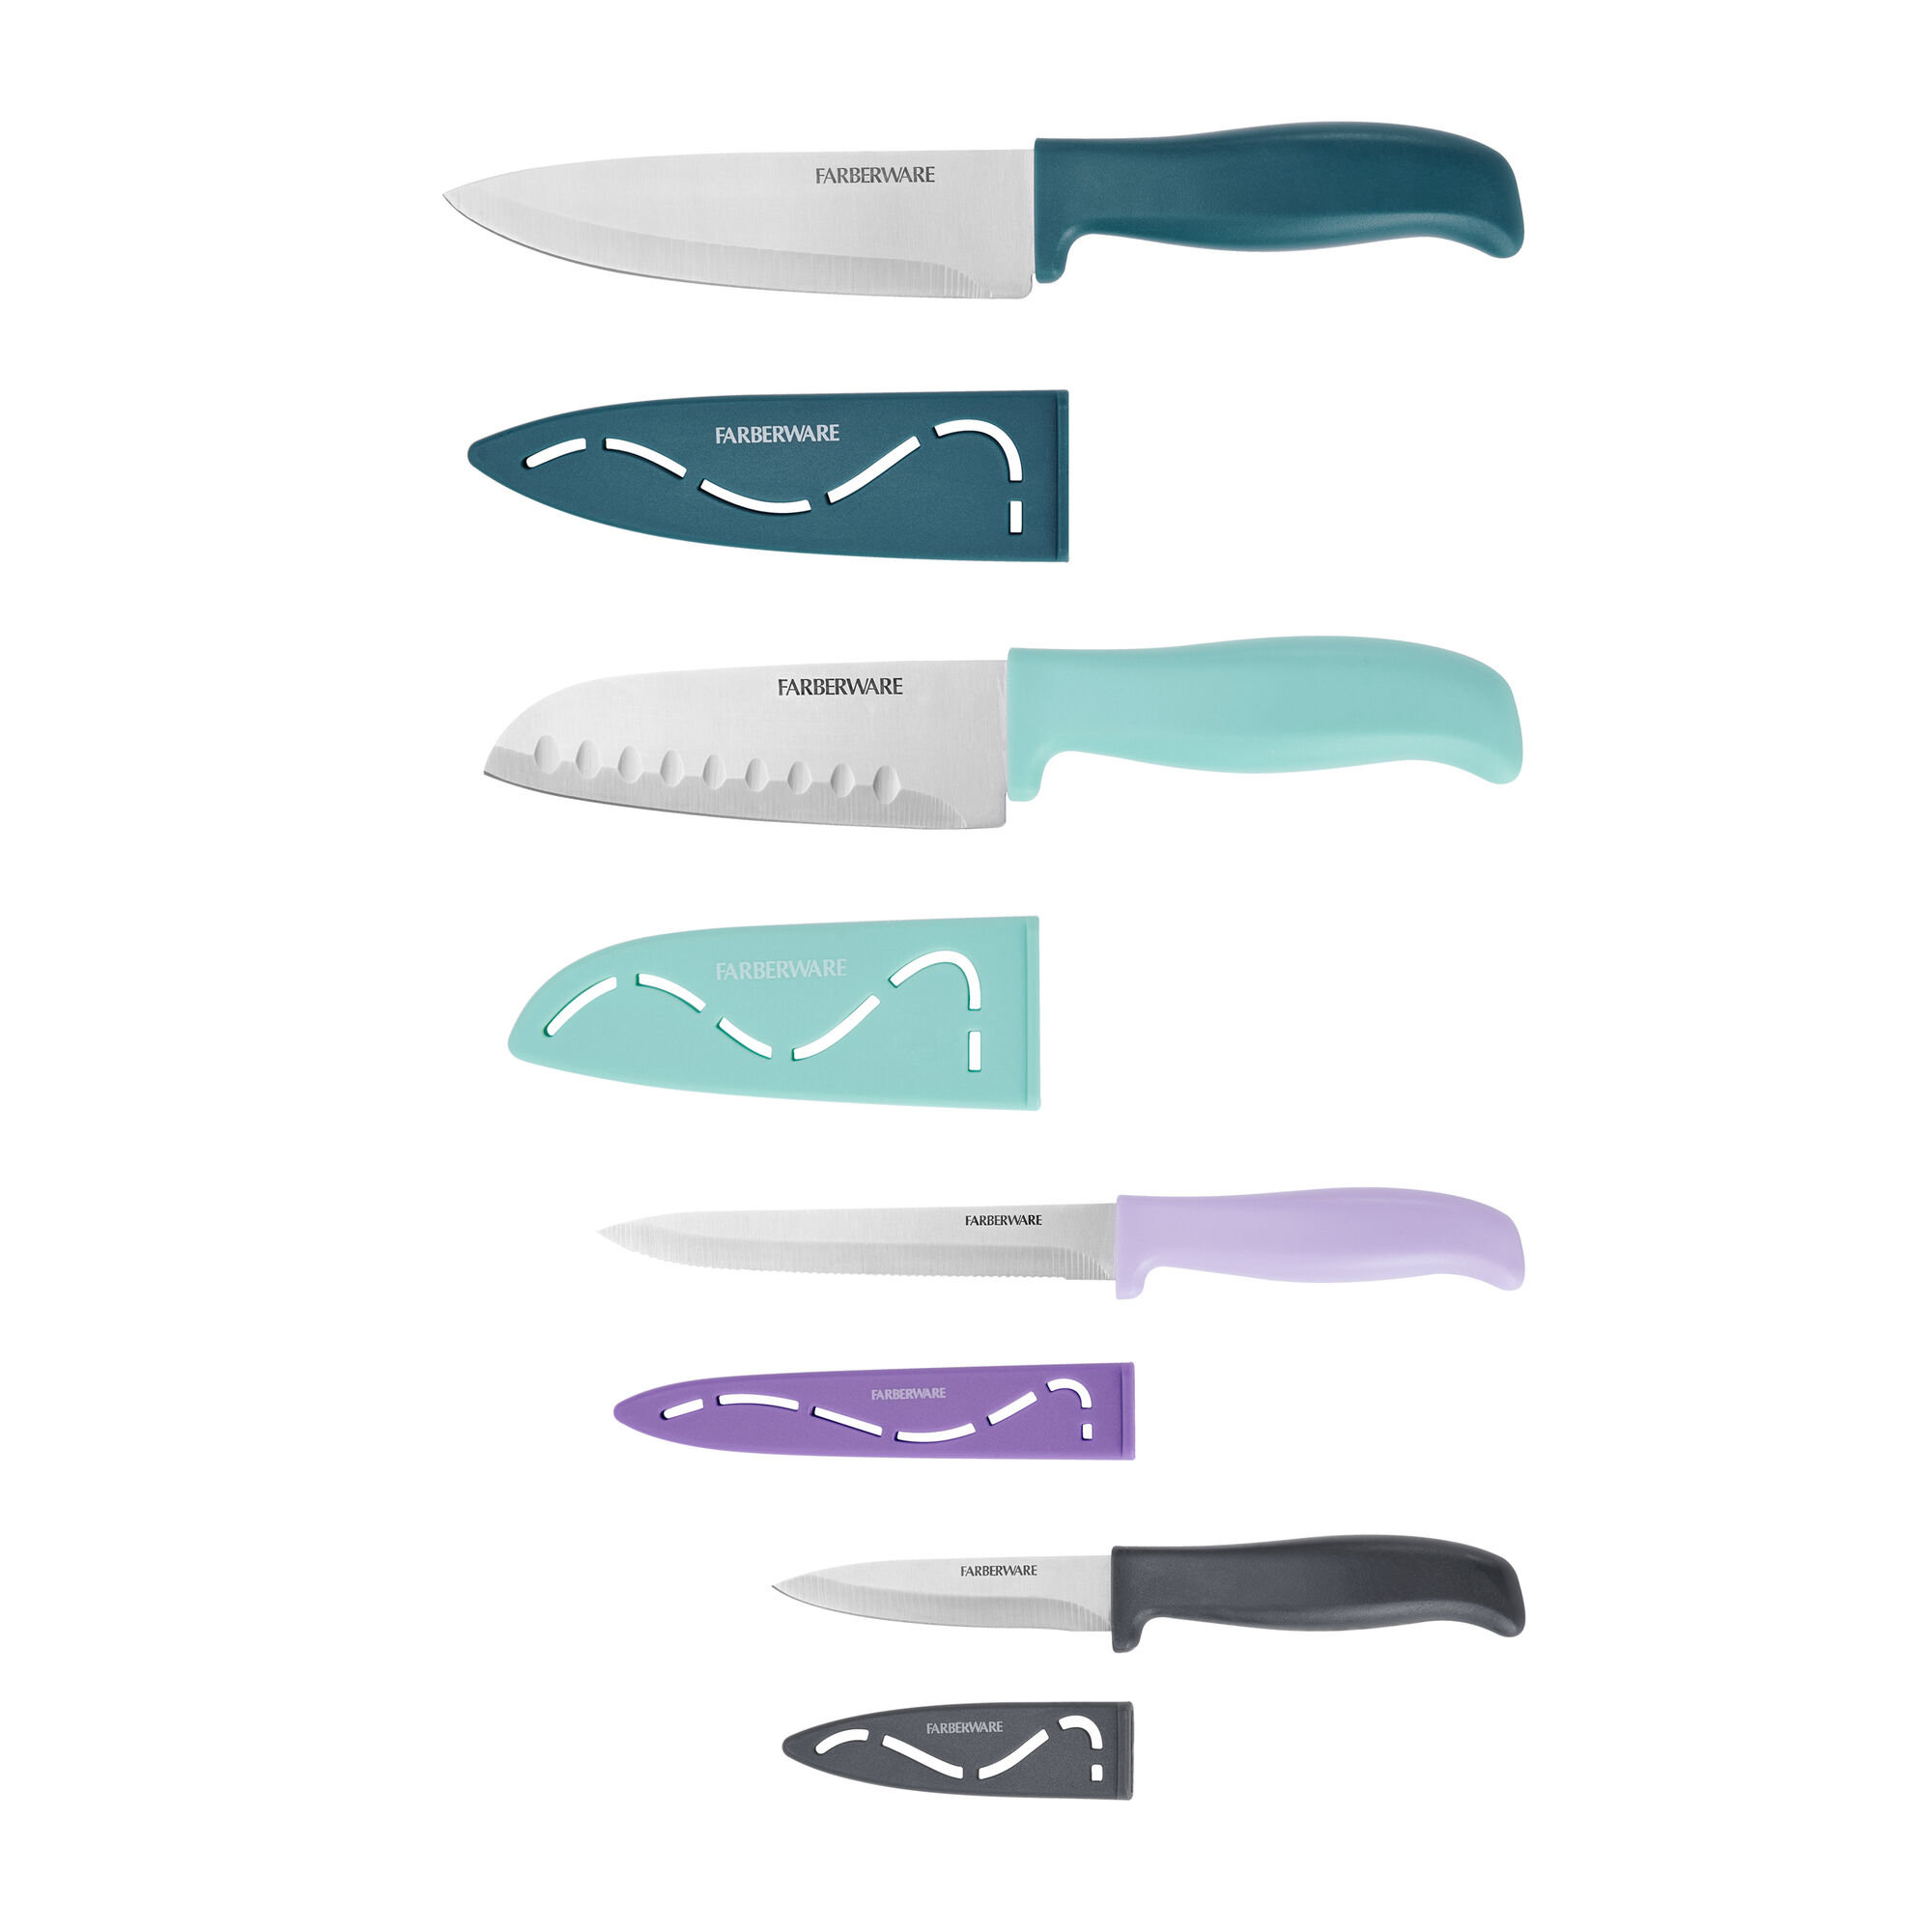 FARBERWARE Serrated Bread Knife & Chef Knife 2 pcs Kitchen Knife Set